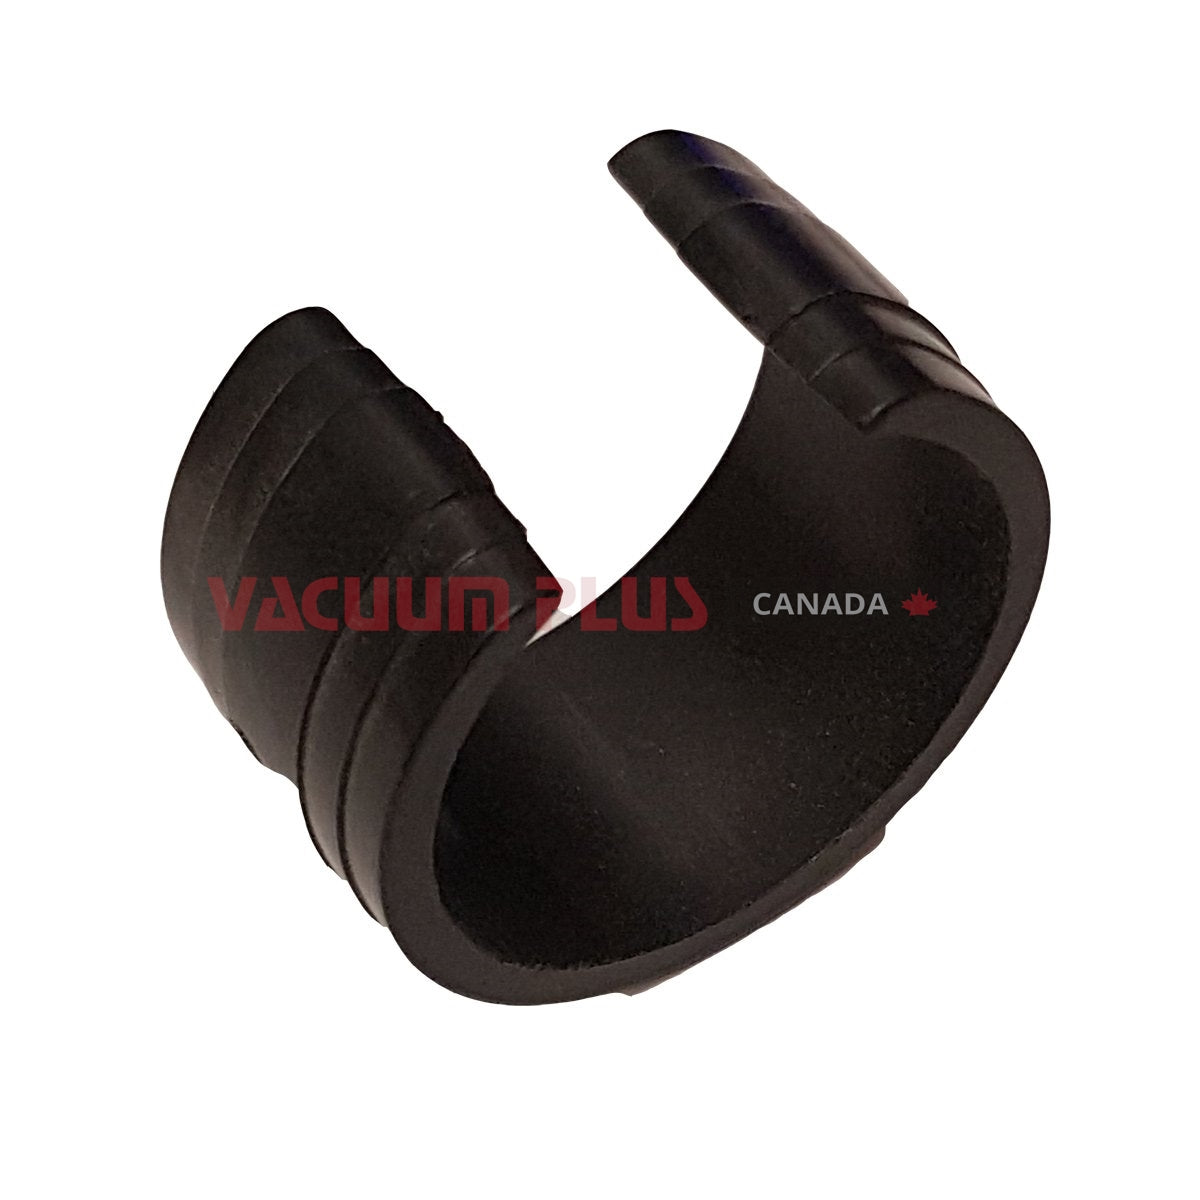 Suction Control Ring 1 1/4" - Black Vacuum Plus Canada Vacuum Plus Canada